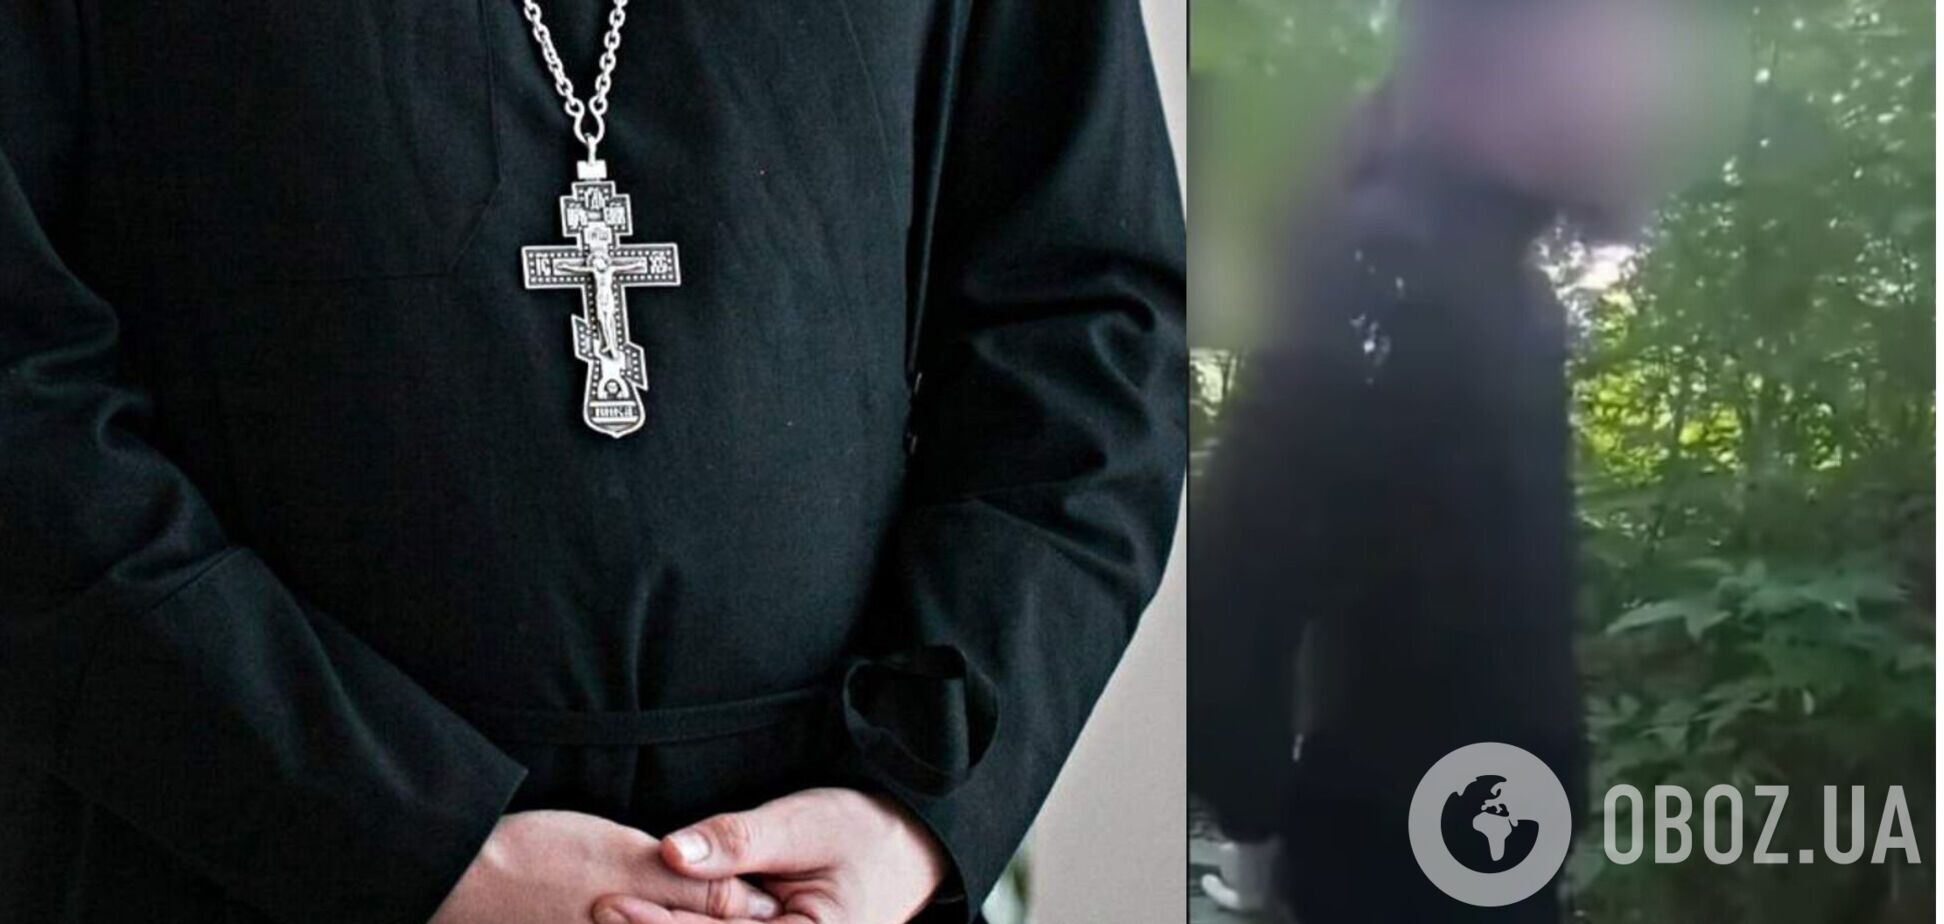 Під Луцьком поліція затримала священника УПЦ МП у жіночому вбранні: в єпархії 'відреклися' від нього